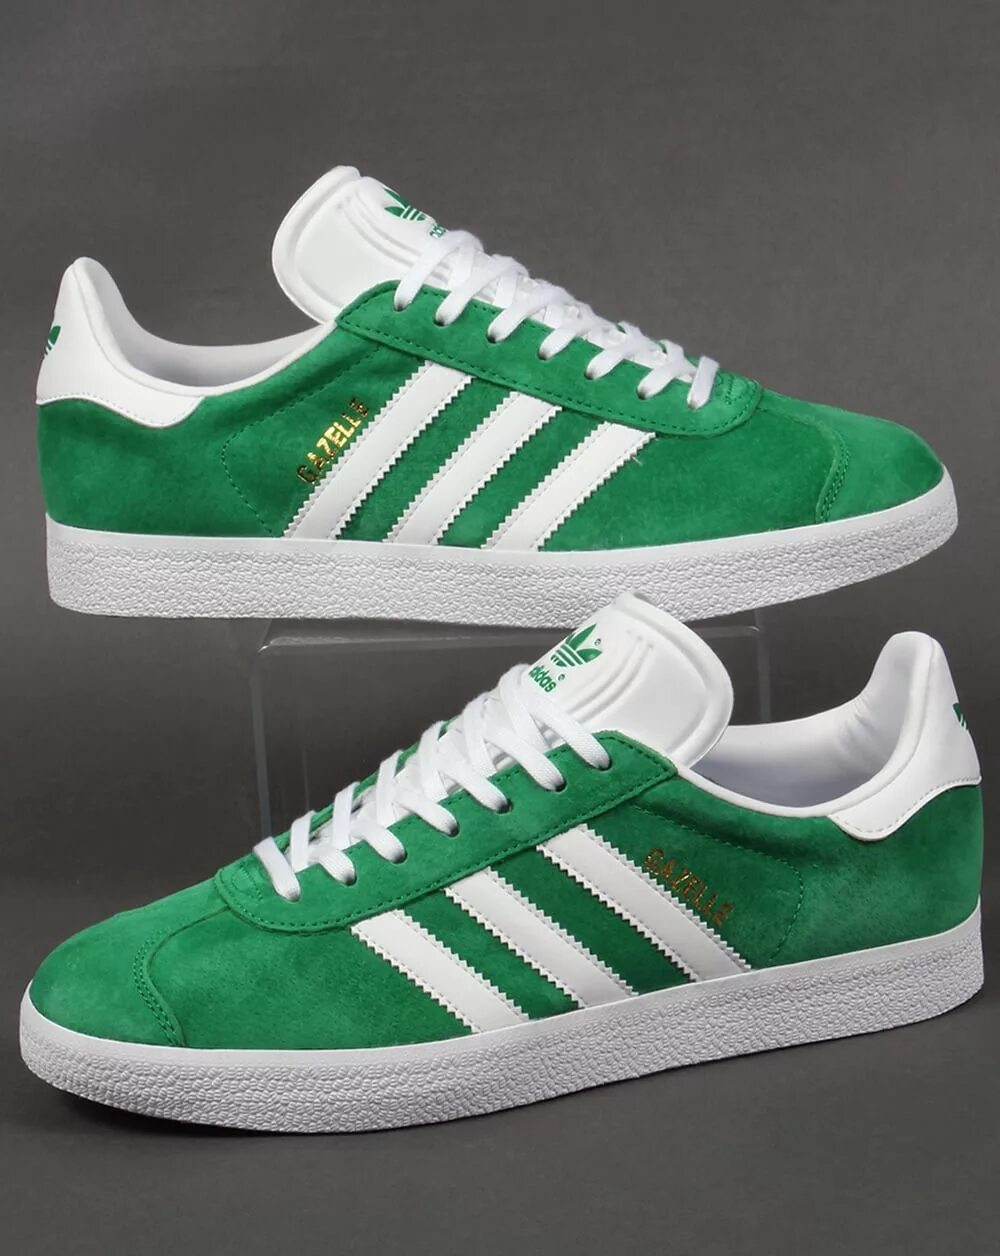 Кроссовки adidas Gazelle Green. Adidas Gazelle White Green. Adidas Gazelle зеленые. Кеды adidas Originals Gazelle Green.